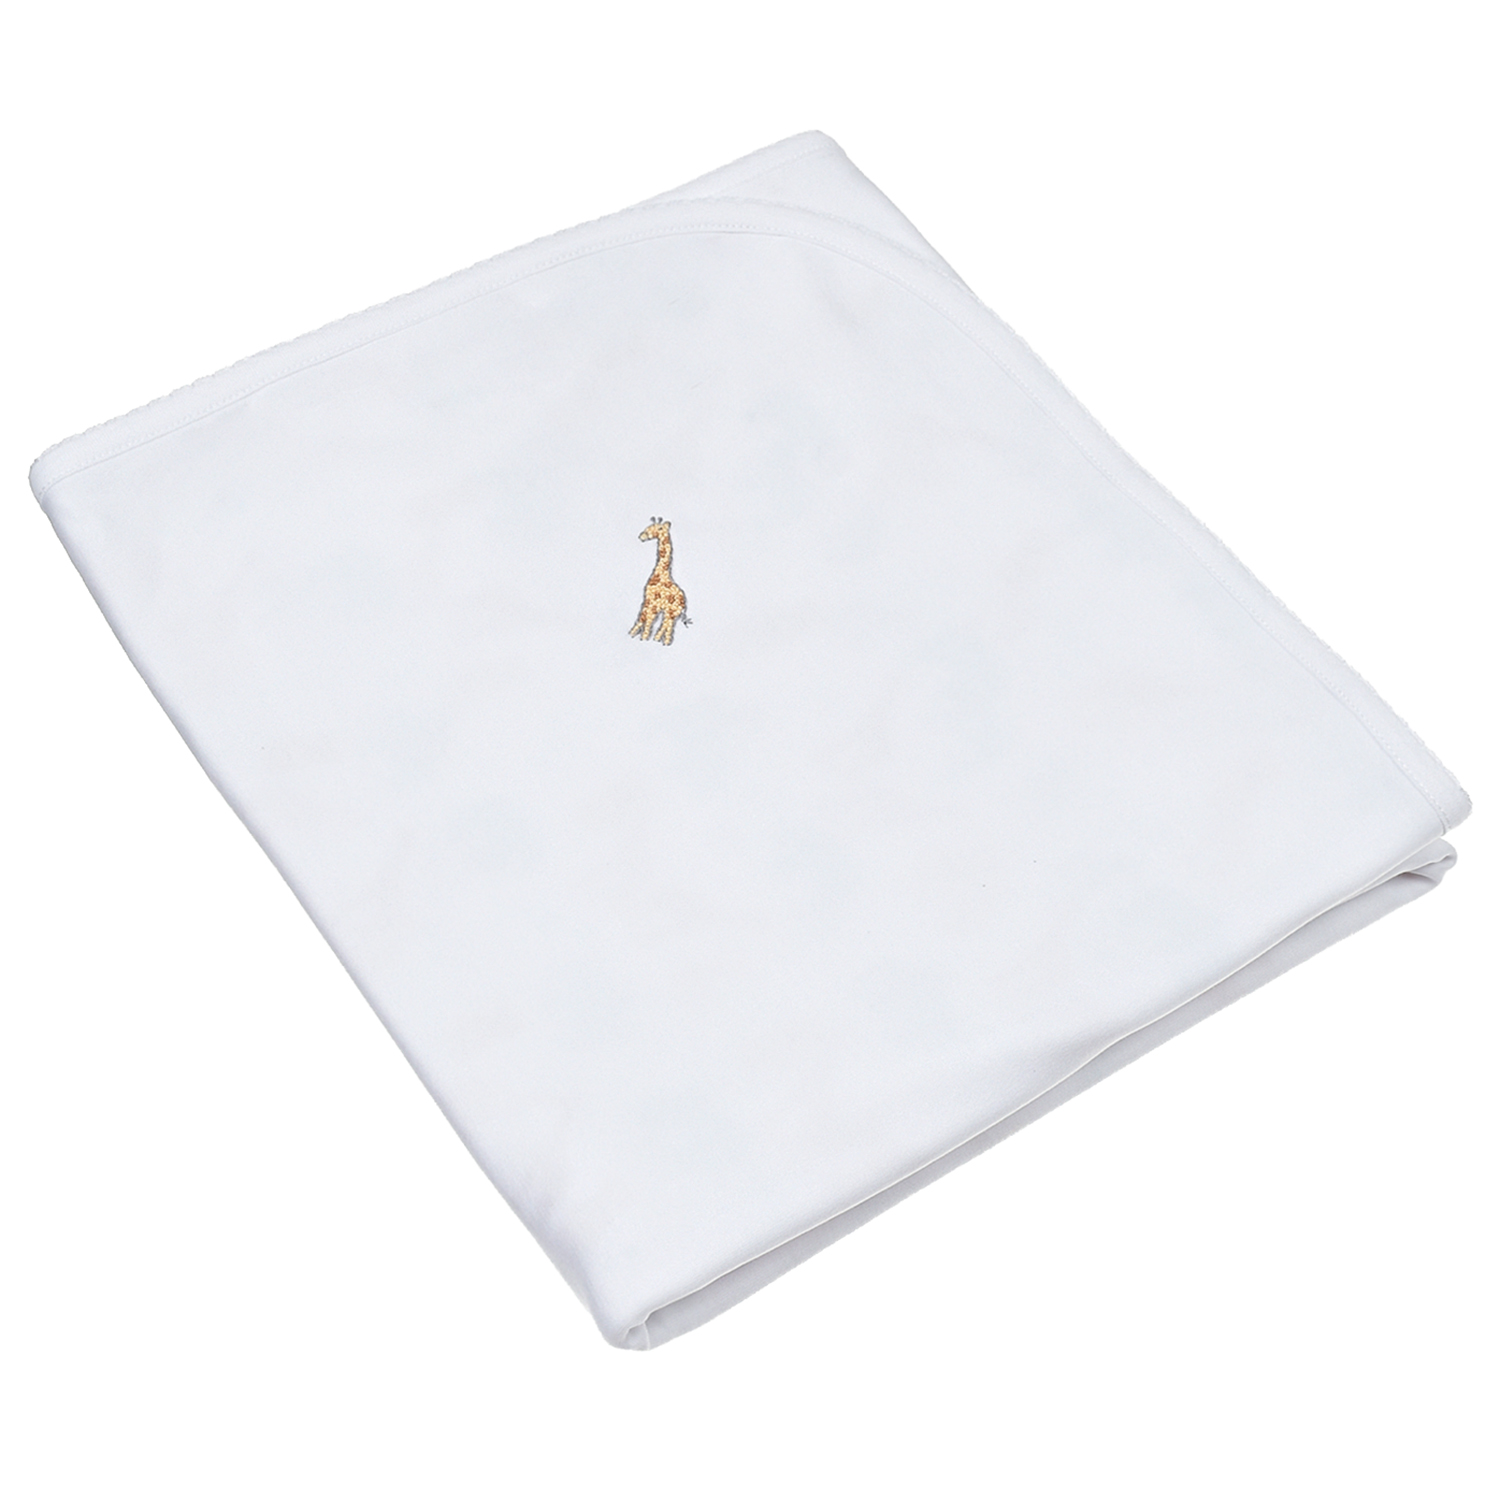 Одеяло с вышивкой "SAFARI ANIMALS" Lyda Baby, размер unica, цвет белый - фото 1